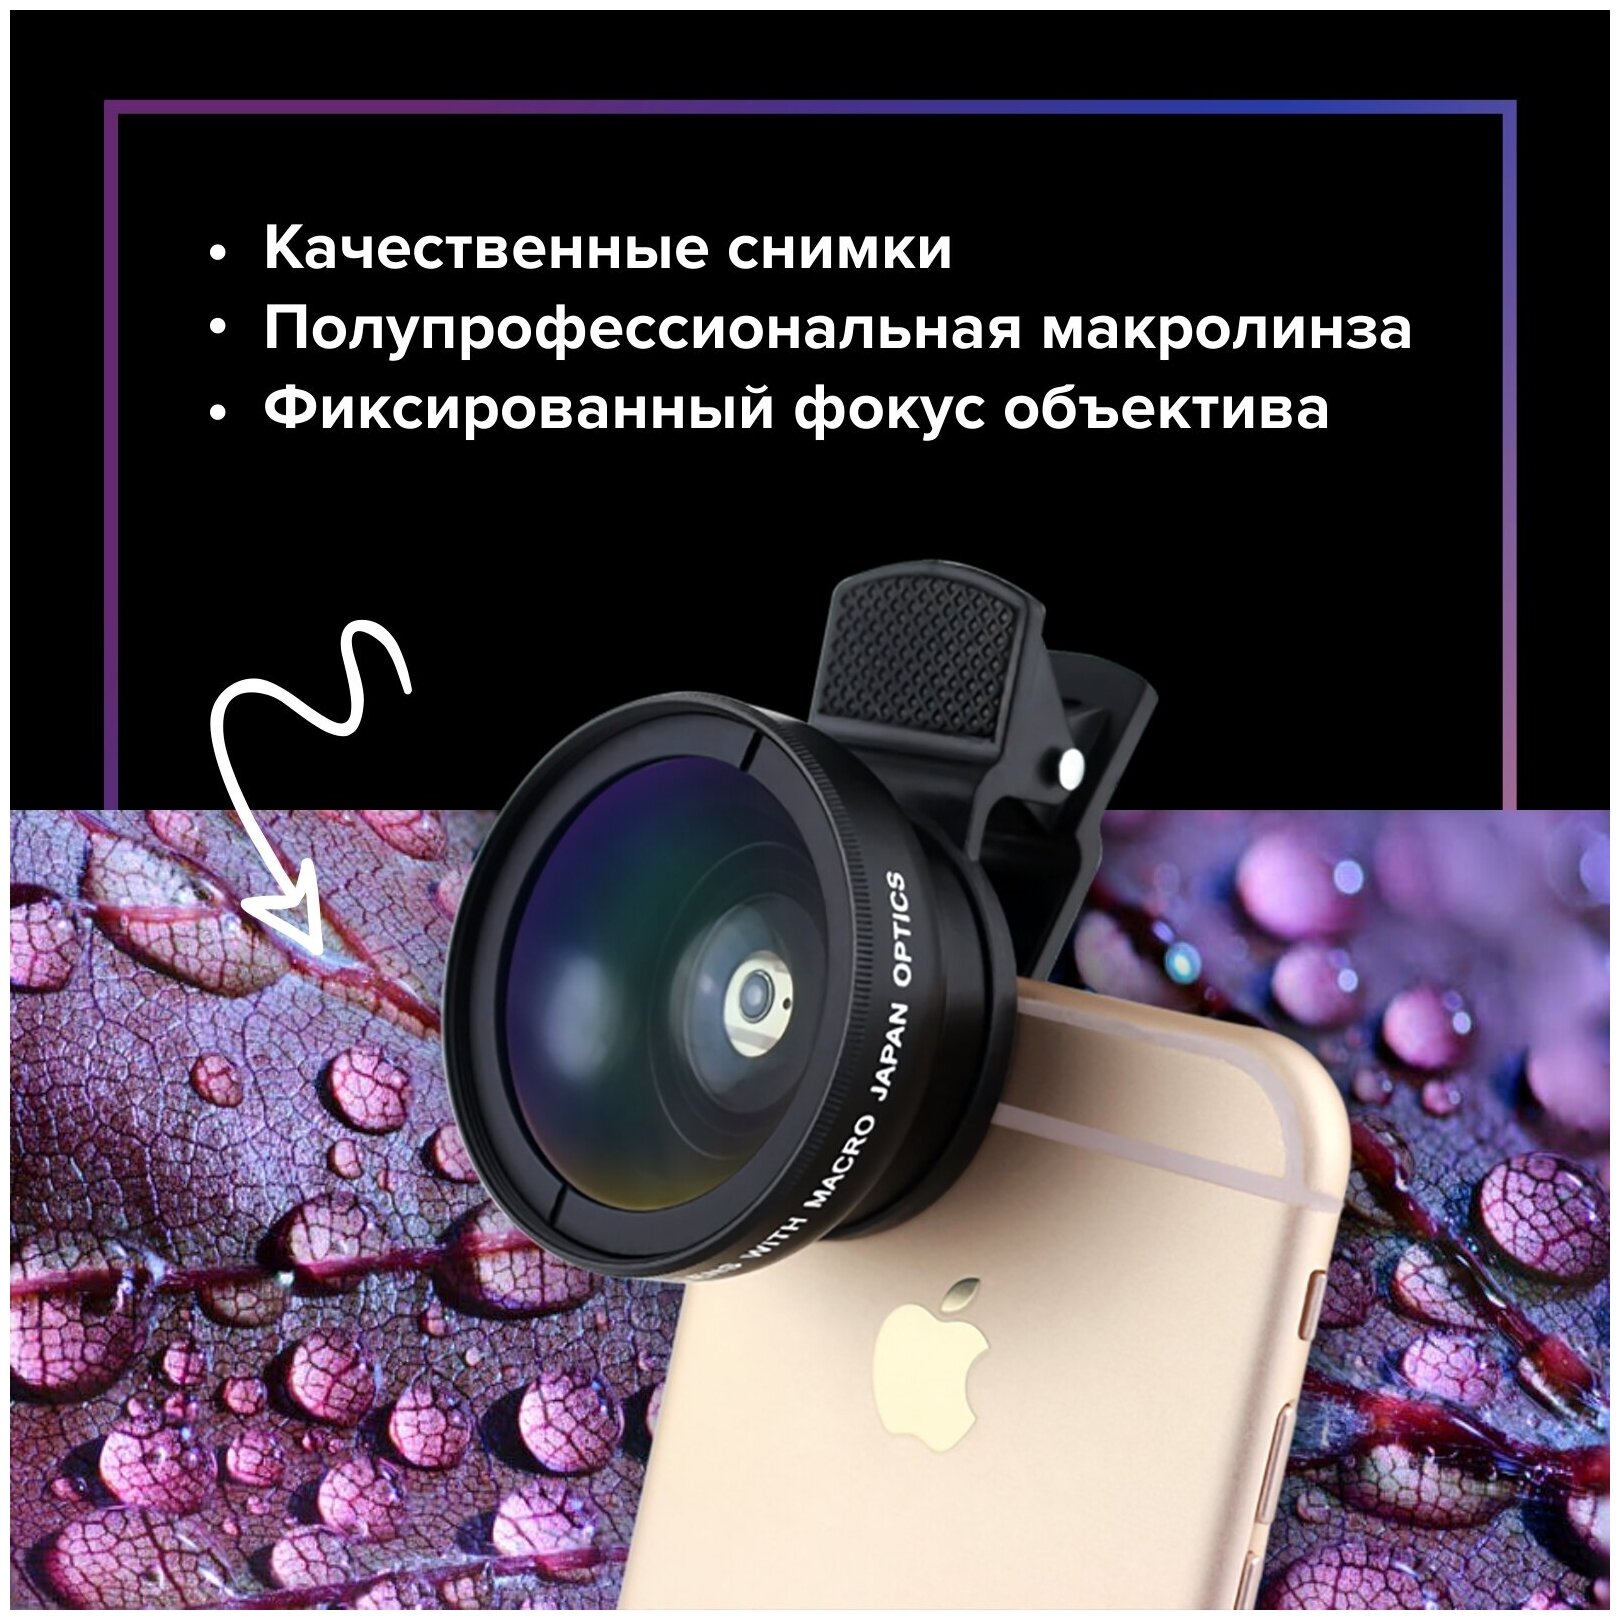 Макролинза для телефона, объектив для телефона Electerra, макролинза для смартфонов android, iPhone